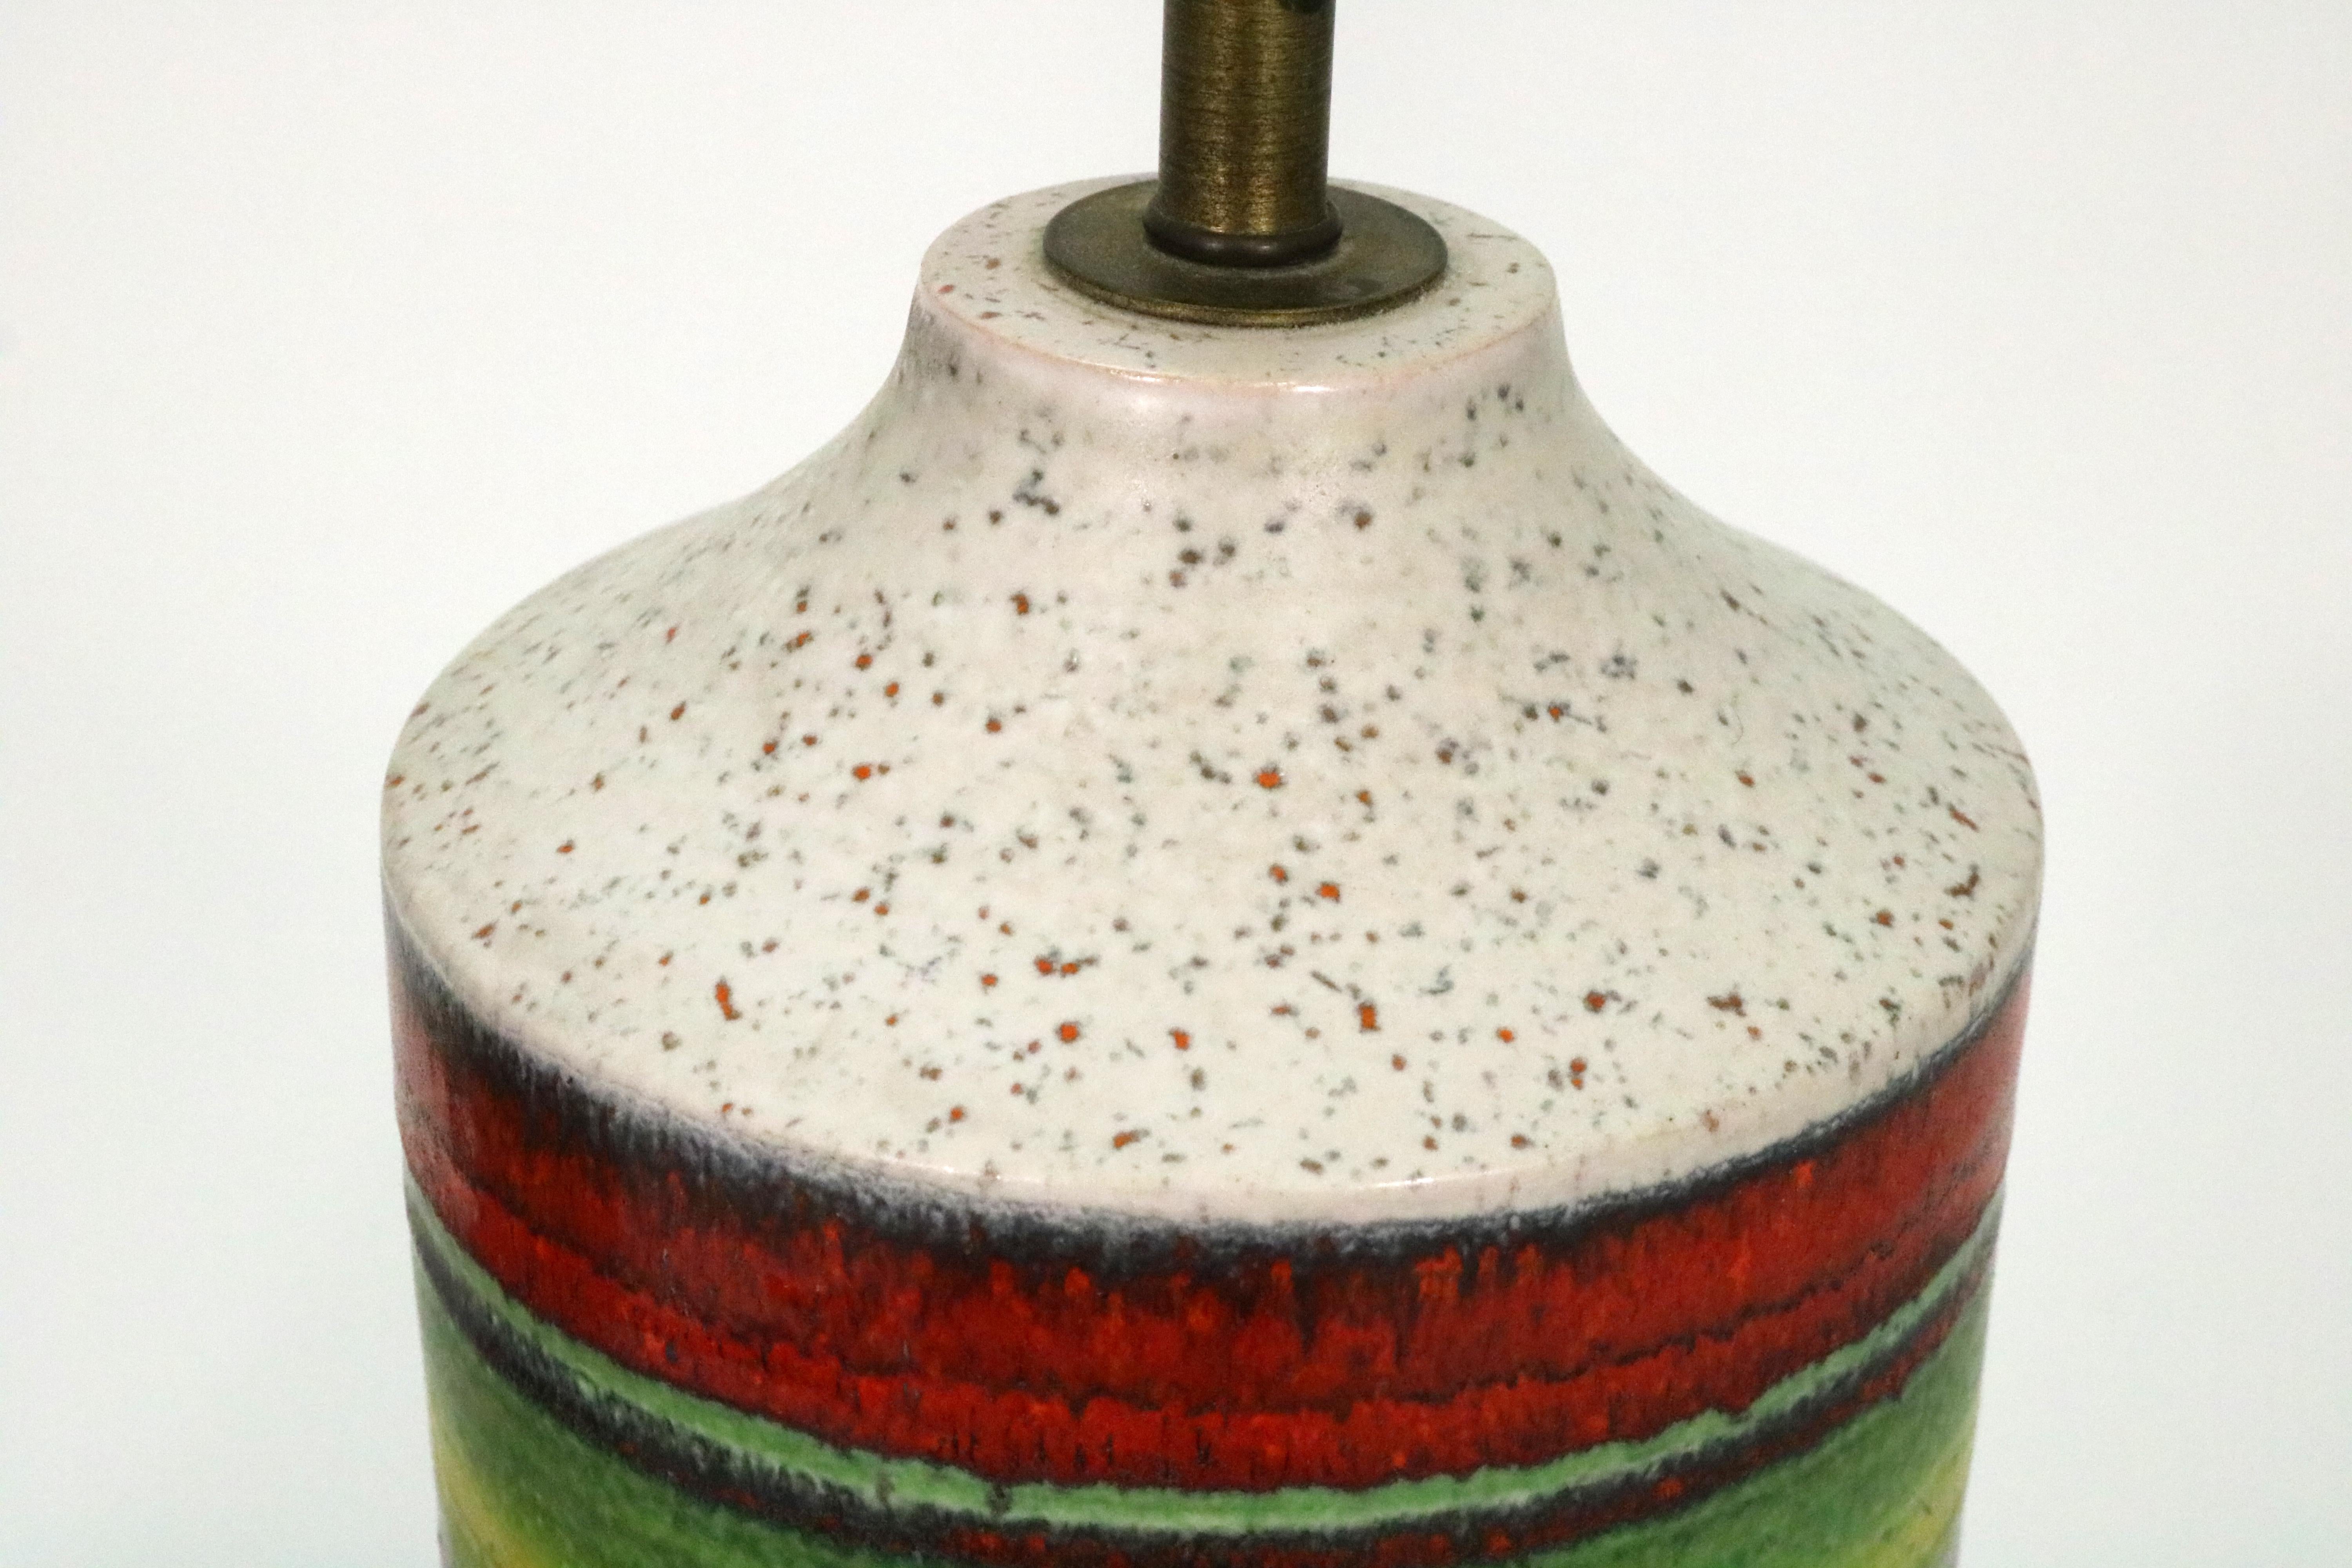 Italian Alvino Bagni Lamps for Bagni Ceramiche, Italy 1960s For Sale